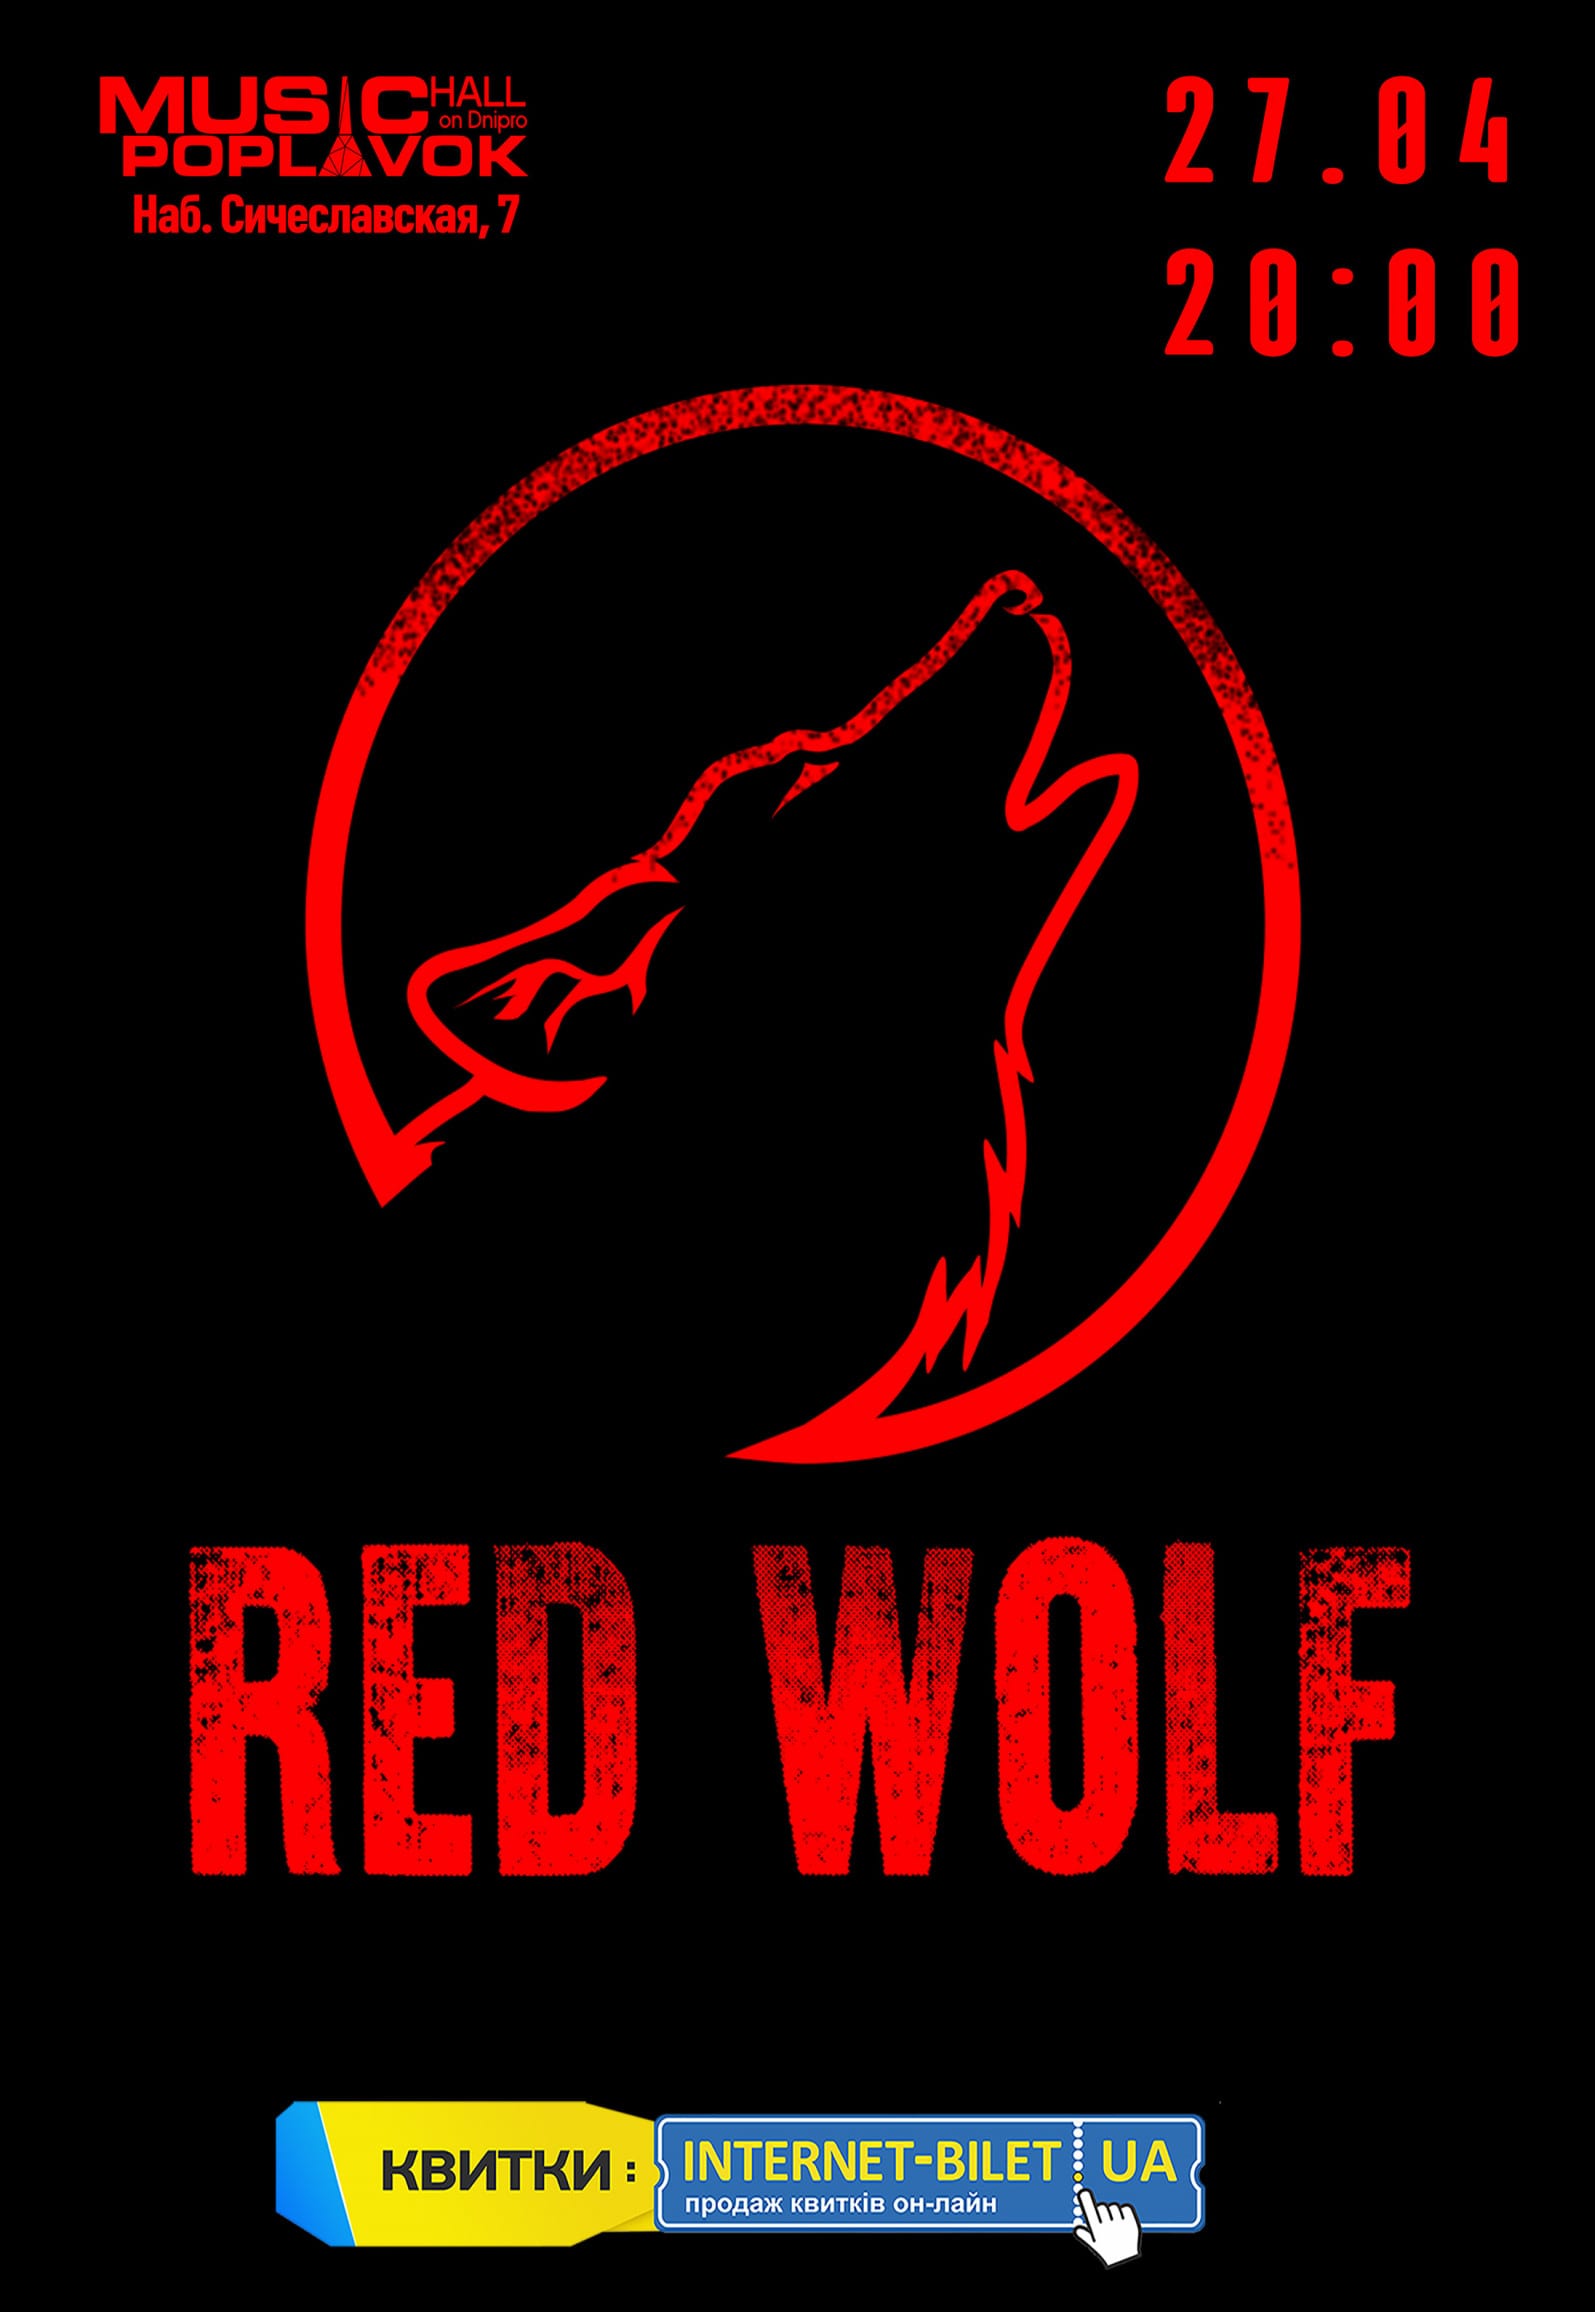 Red Wolf Днепр, 27.04.2019, купить билеты, дата, время